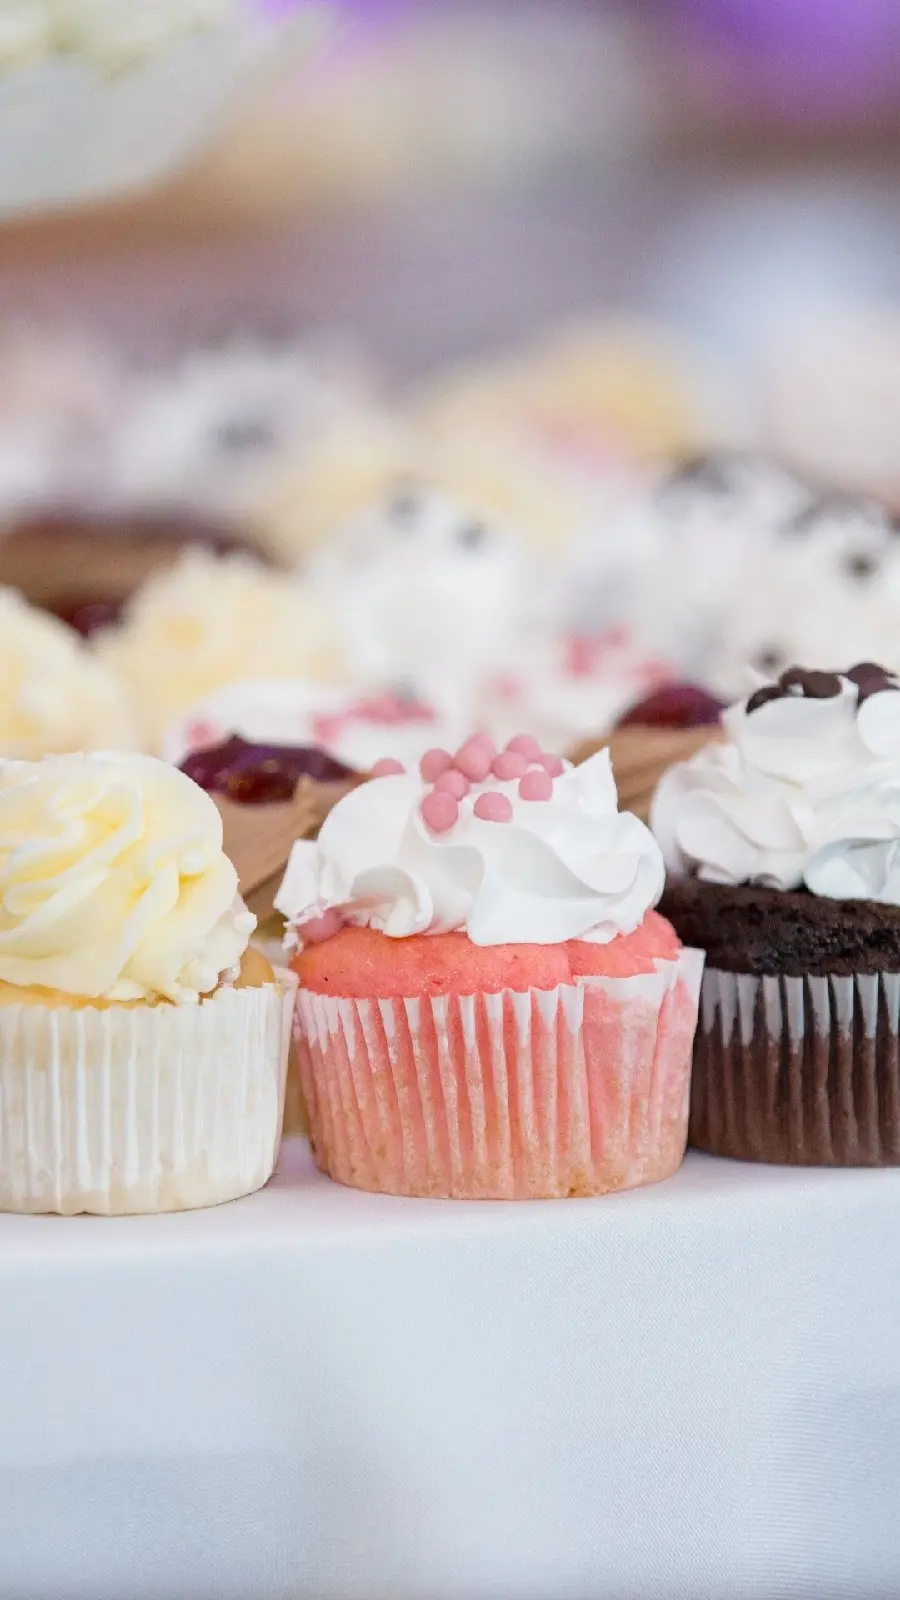 دانلود تصویر استوک انواع مختلف کاپ کیک برای جشن و مراسمات